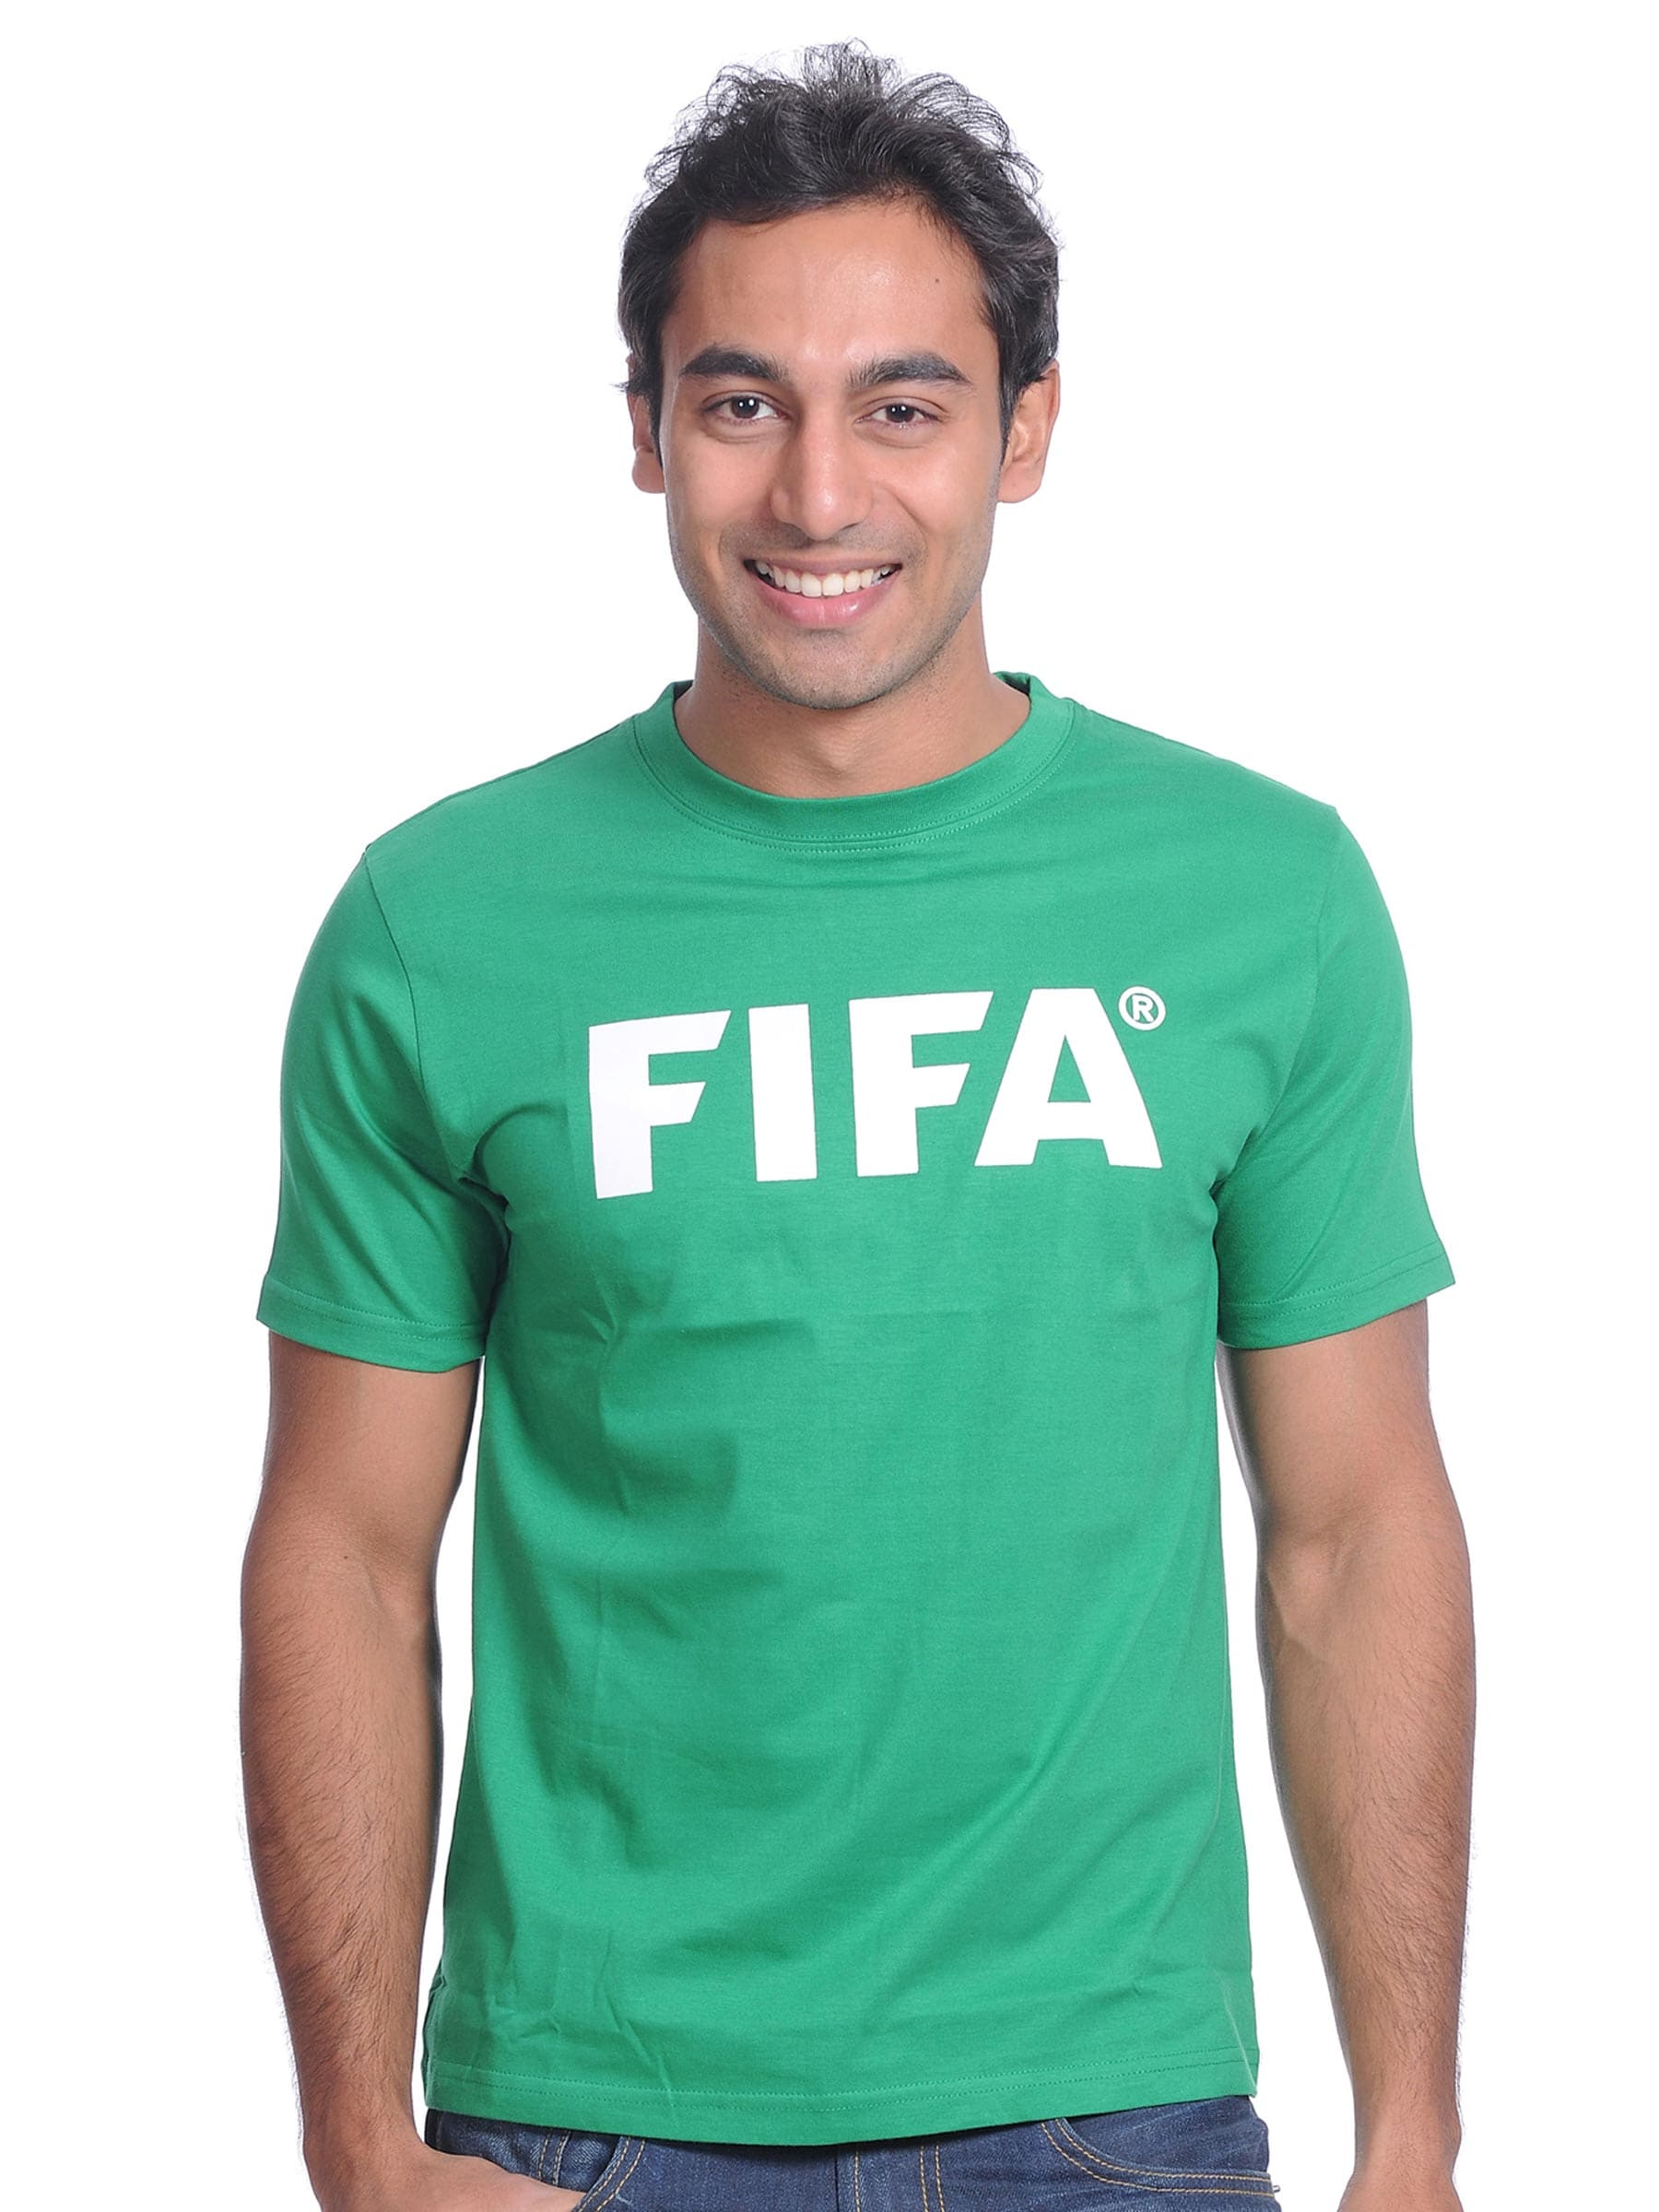 FIFA Mens Essentials Green T-shirt